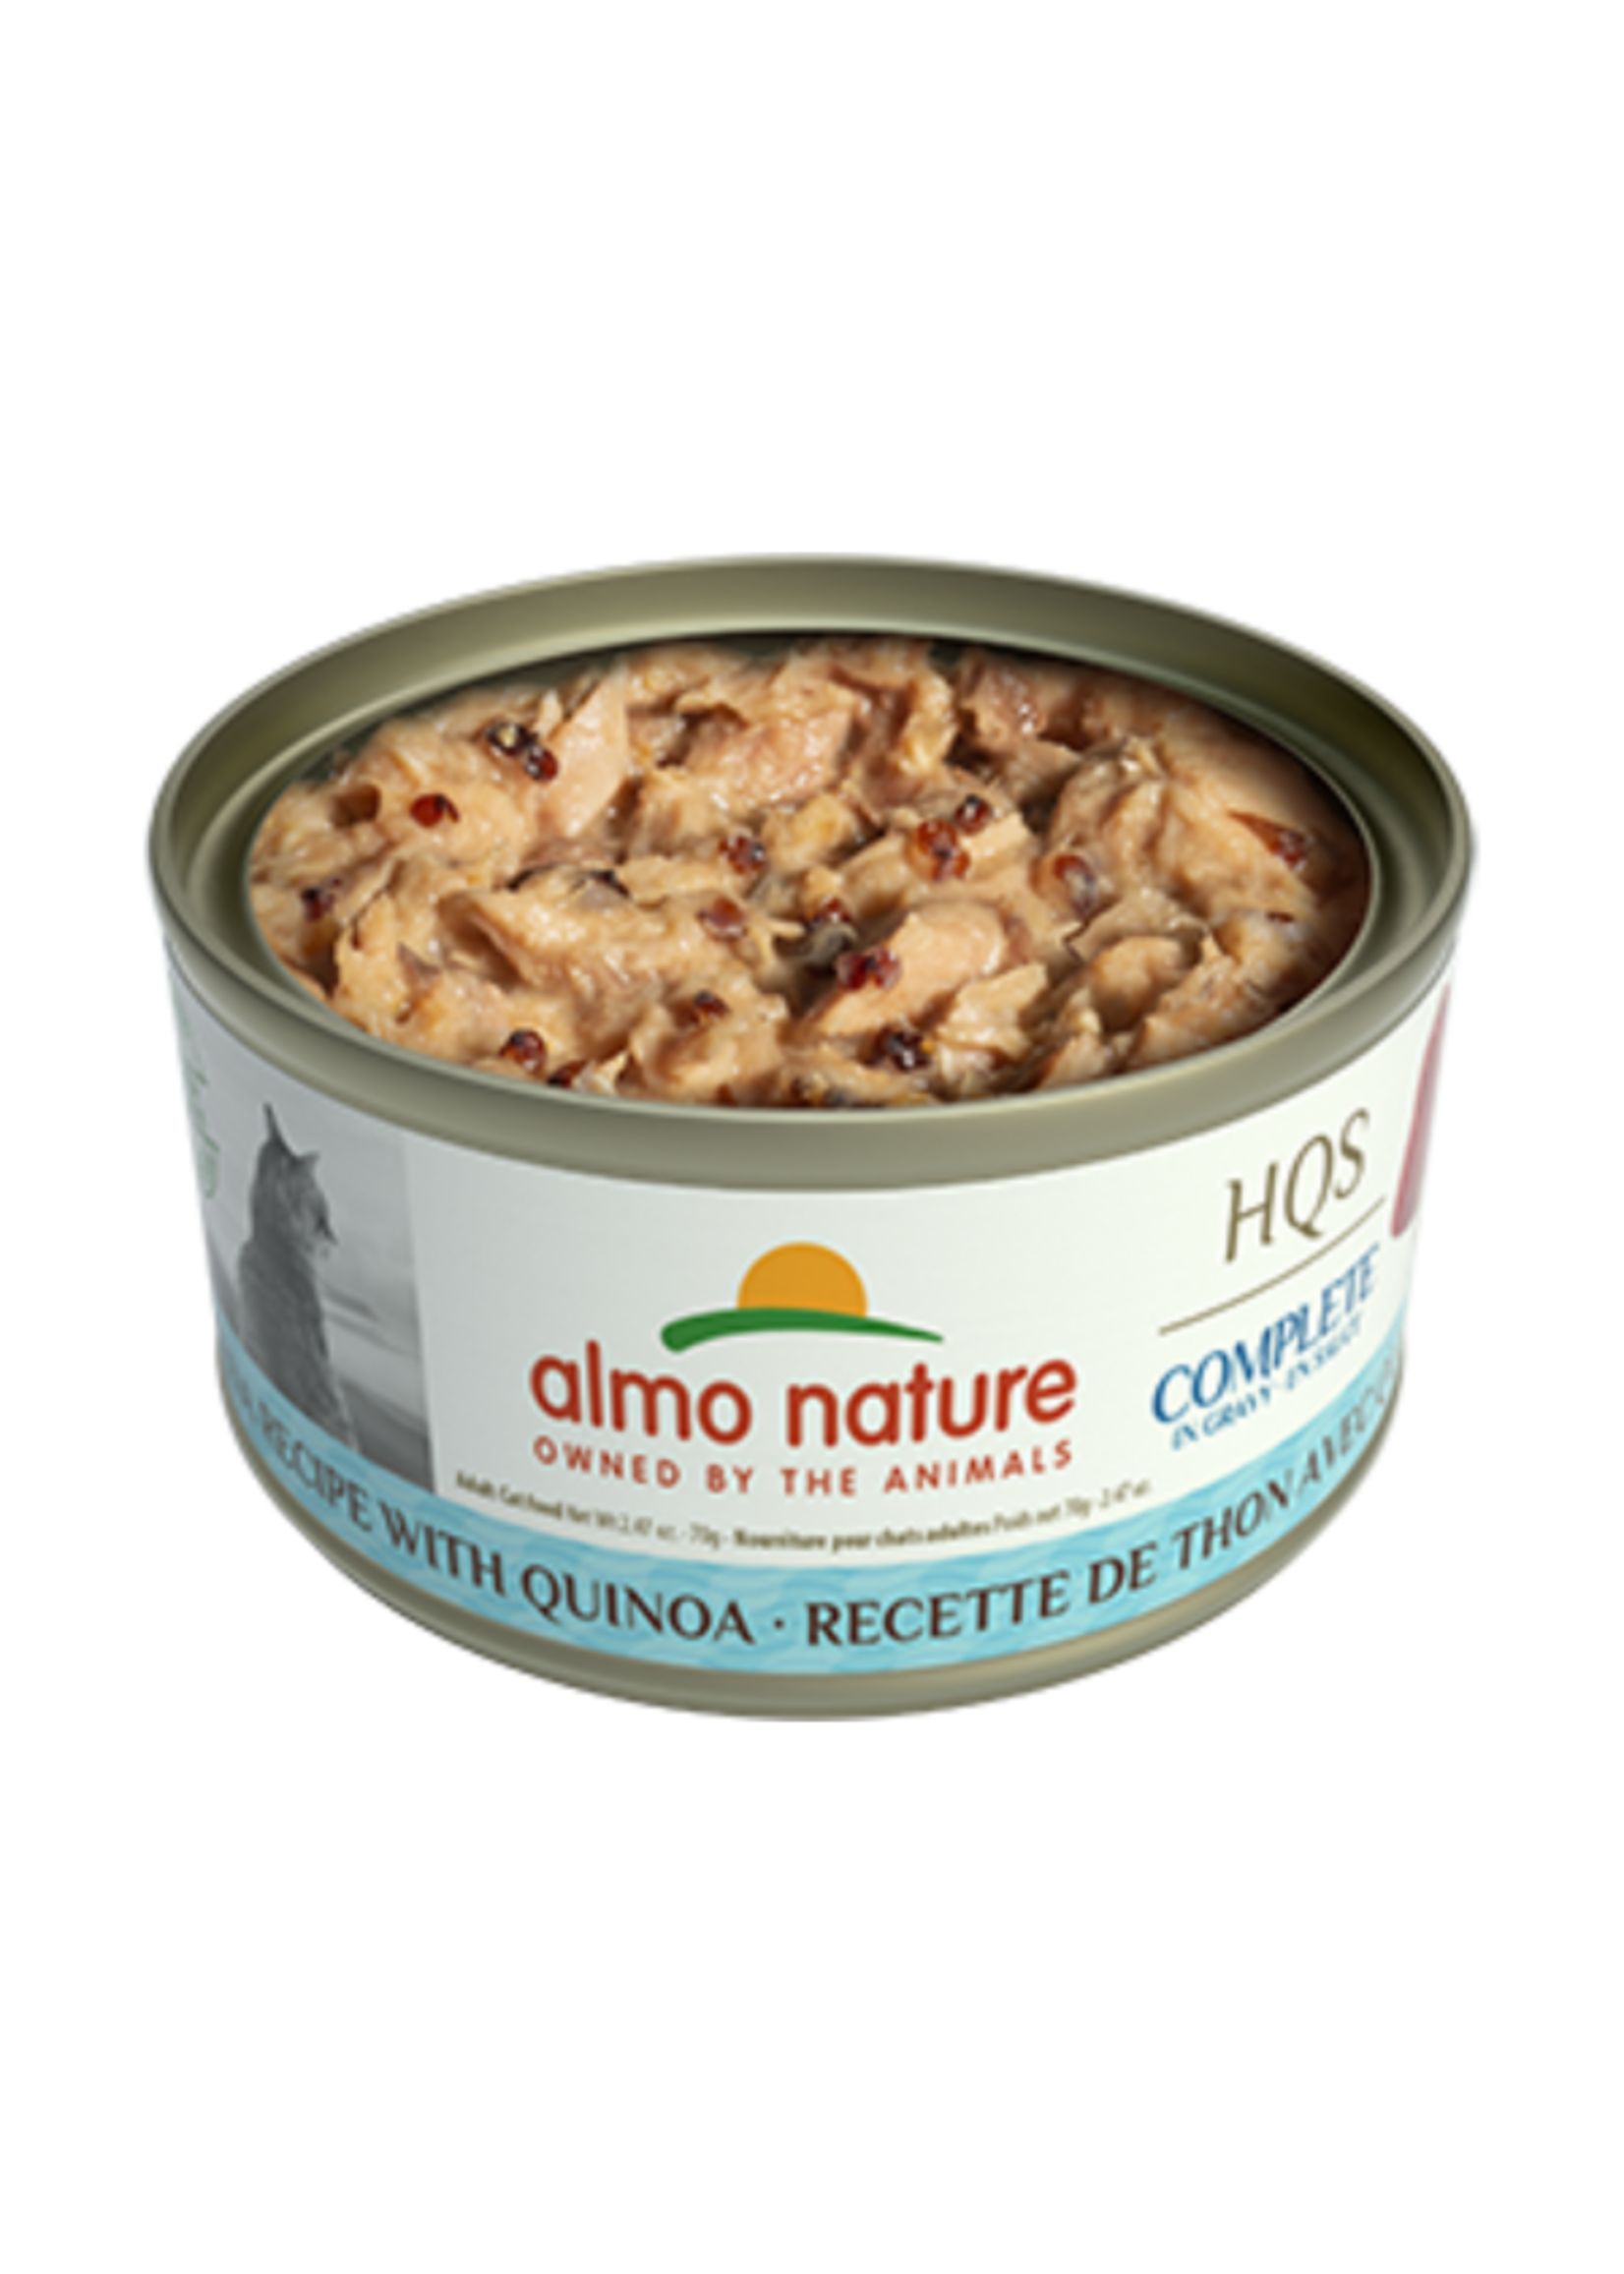 almo nature HQS complète - Thon avec quinoa en sauce